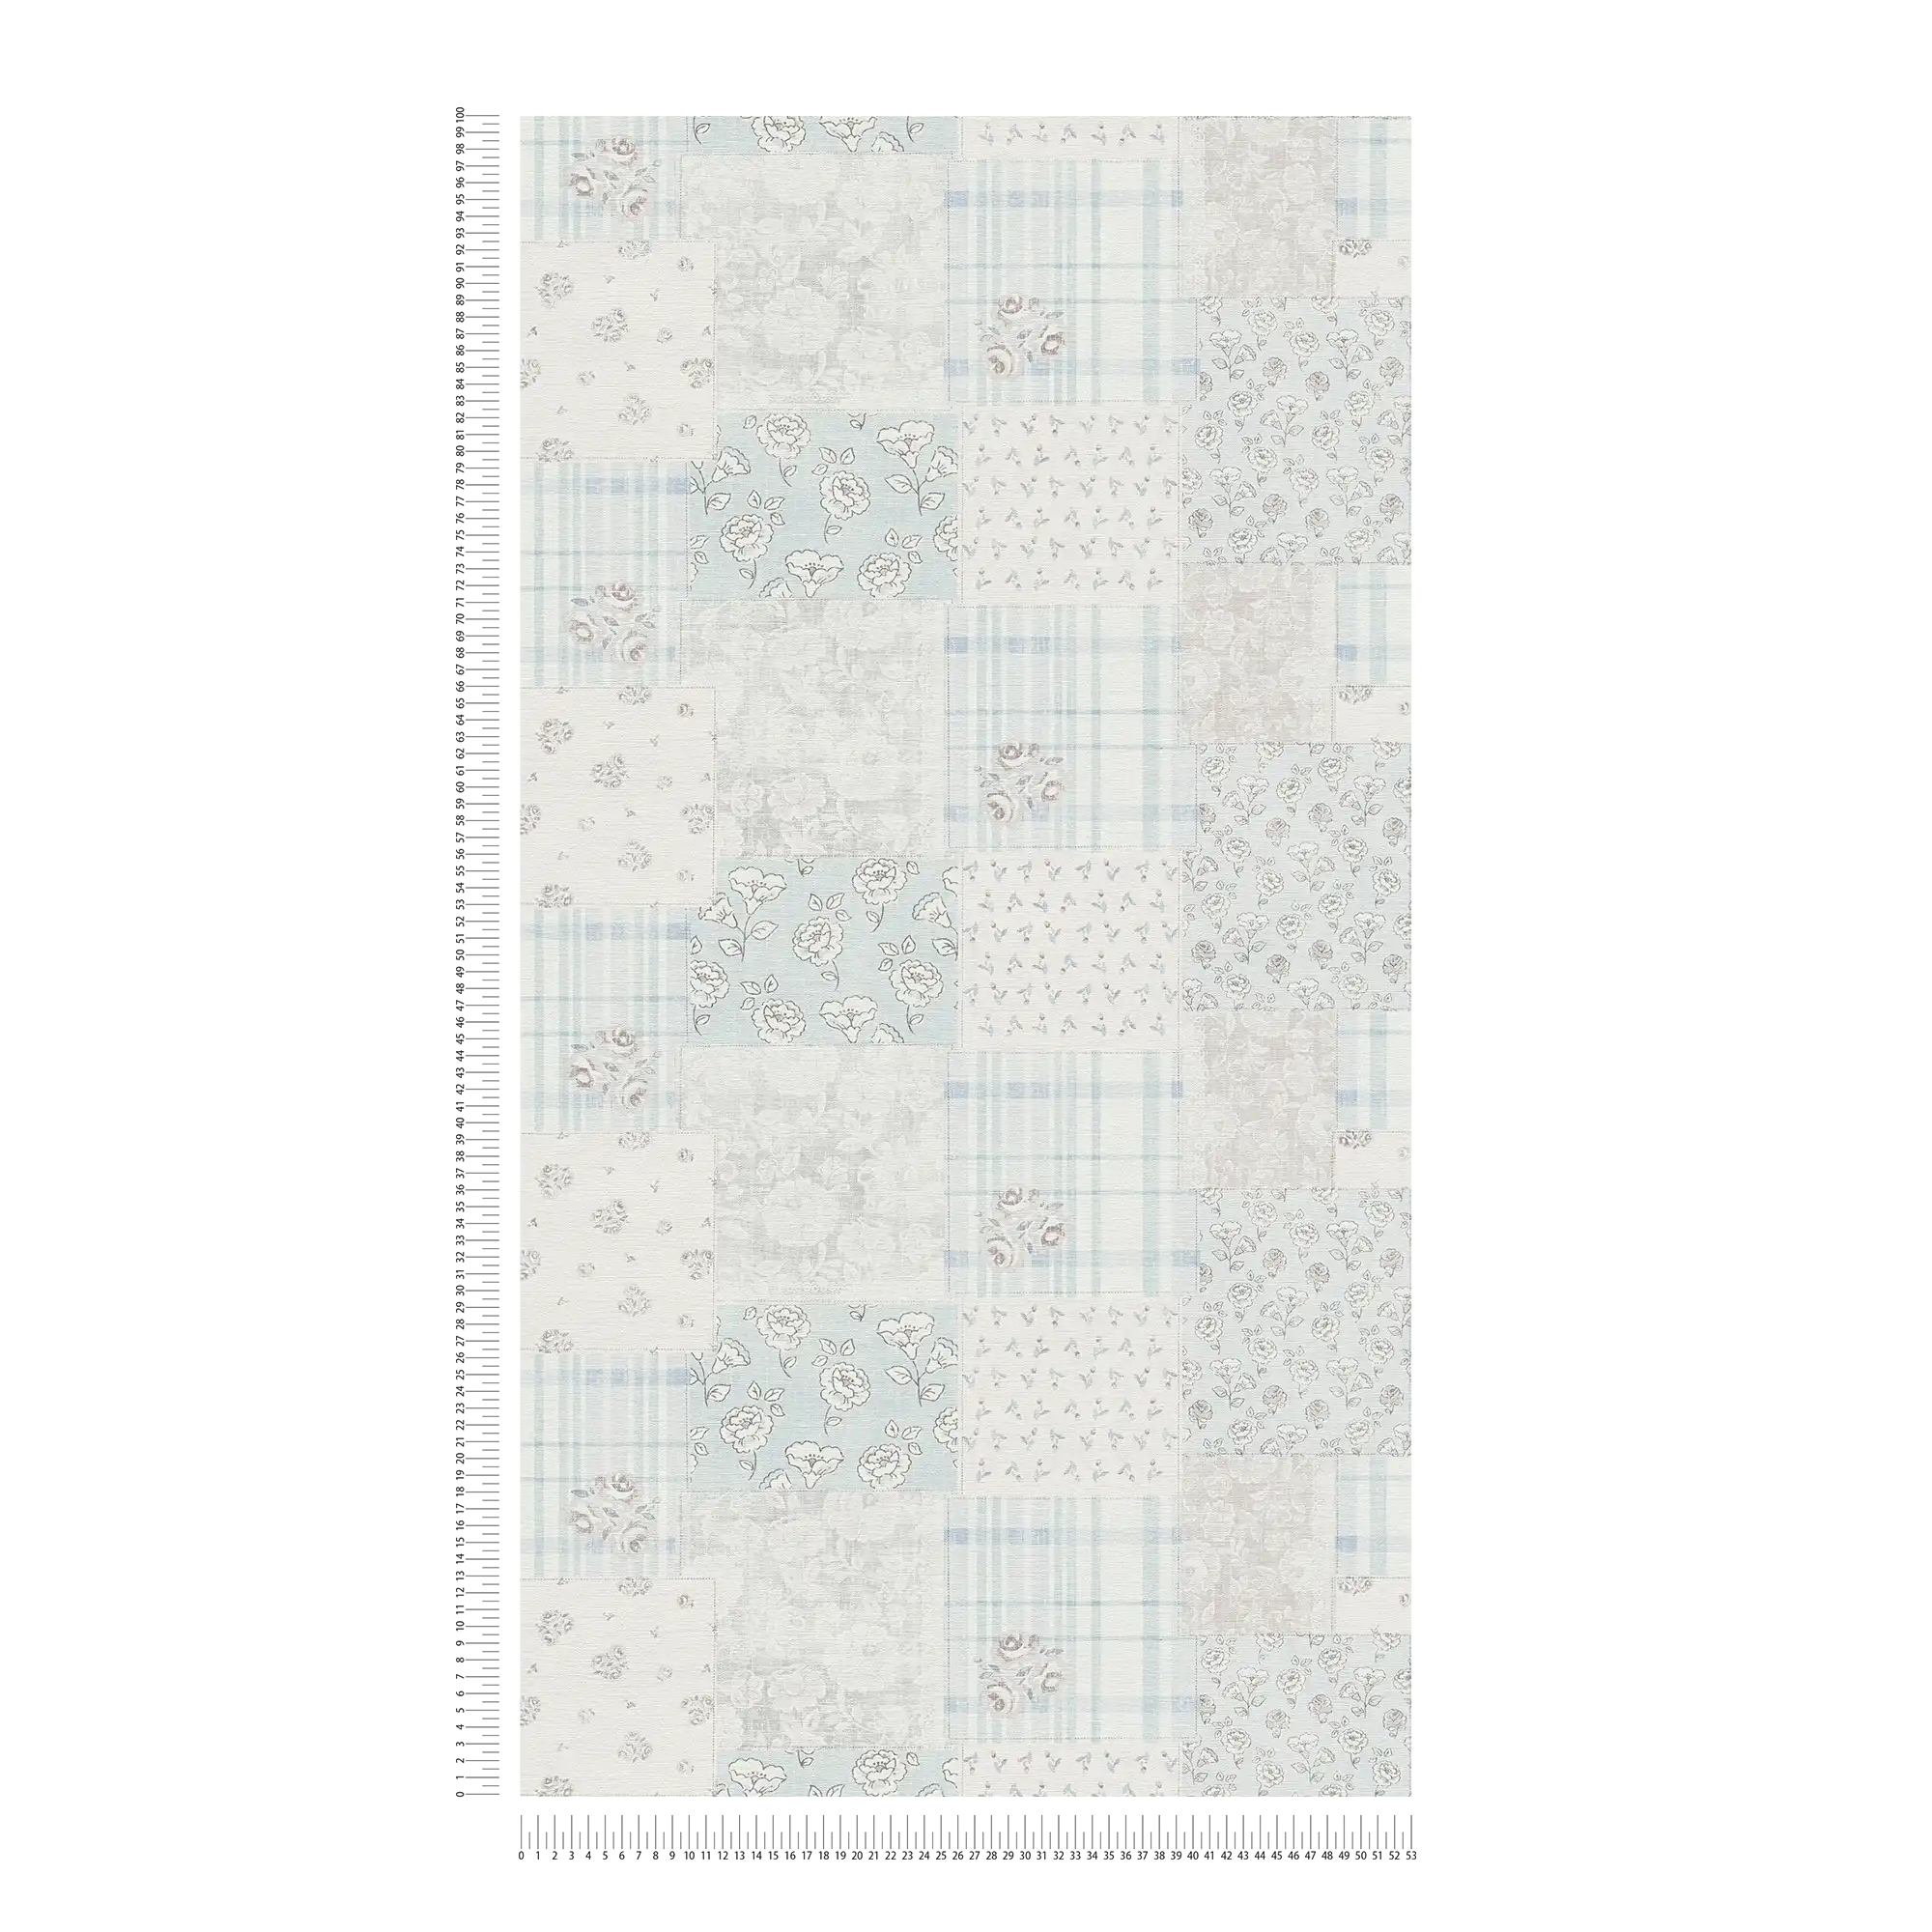             Papier peint intissé motif fleurs et carreaux style rustique - bleu clair, gris, blanc
        